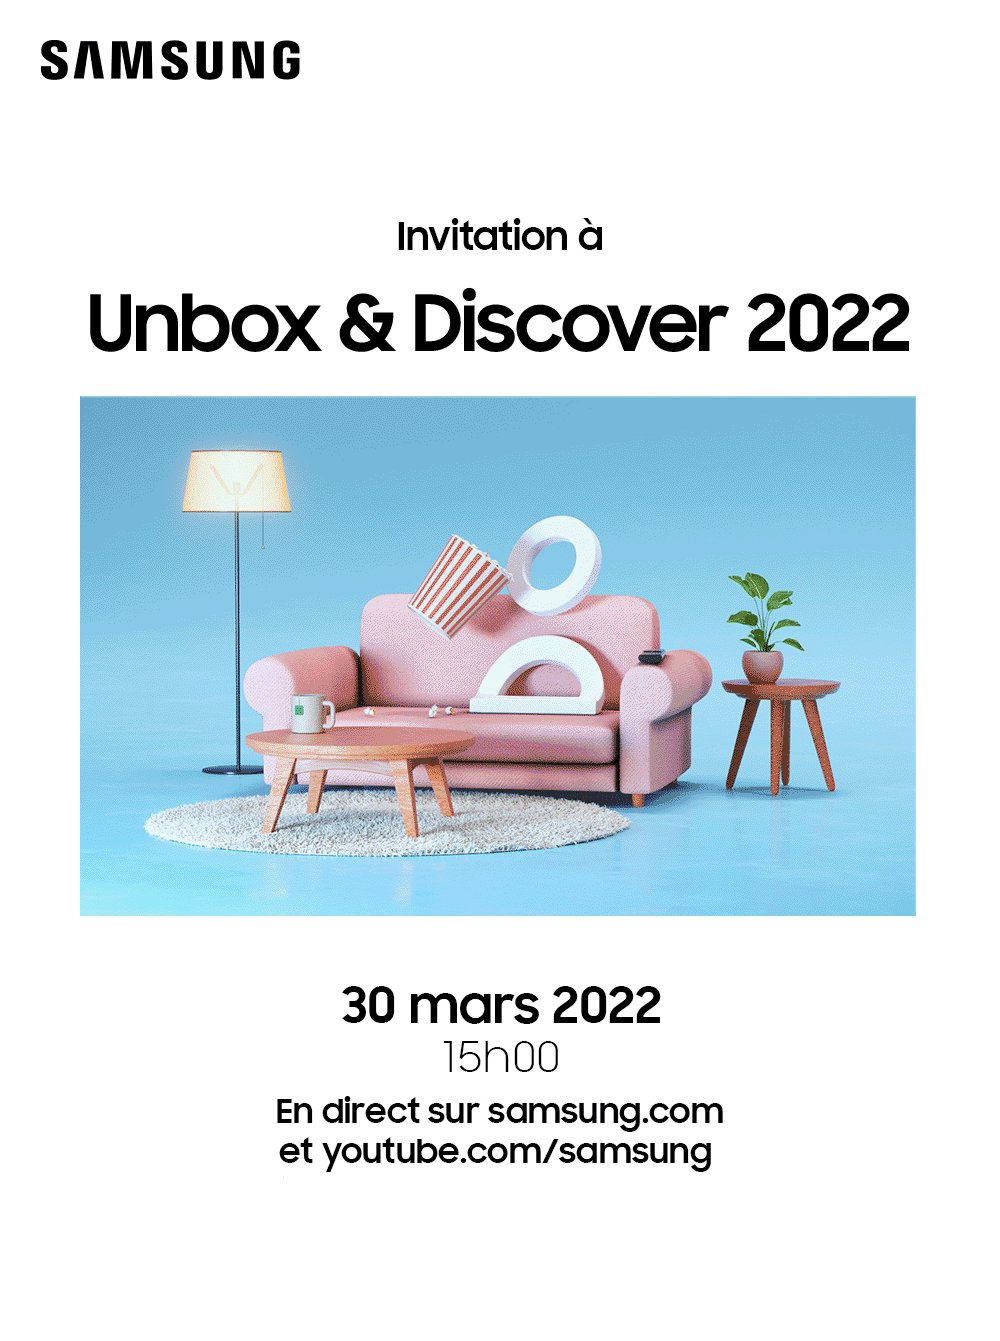 U&D2022_invitation